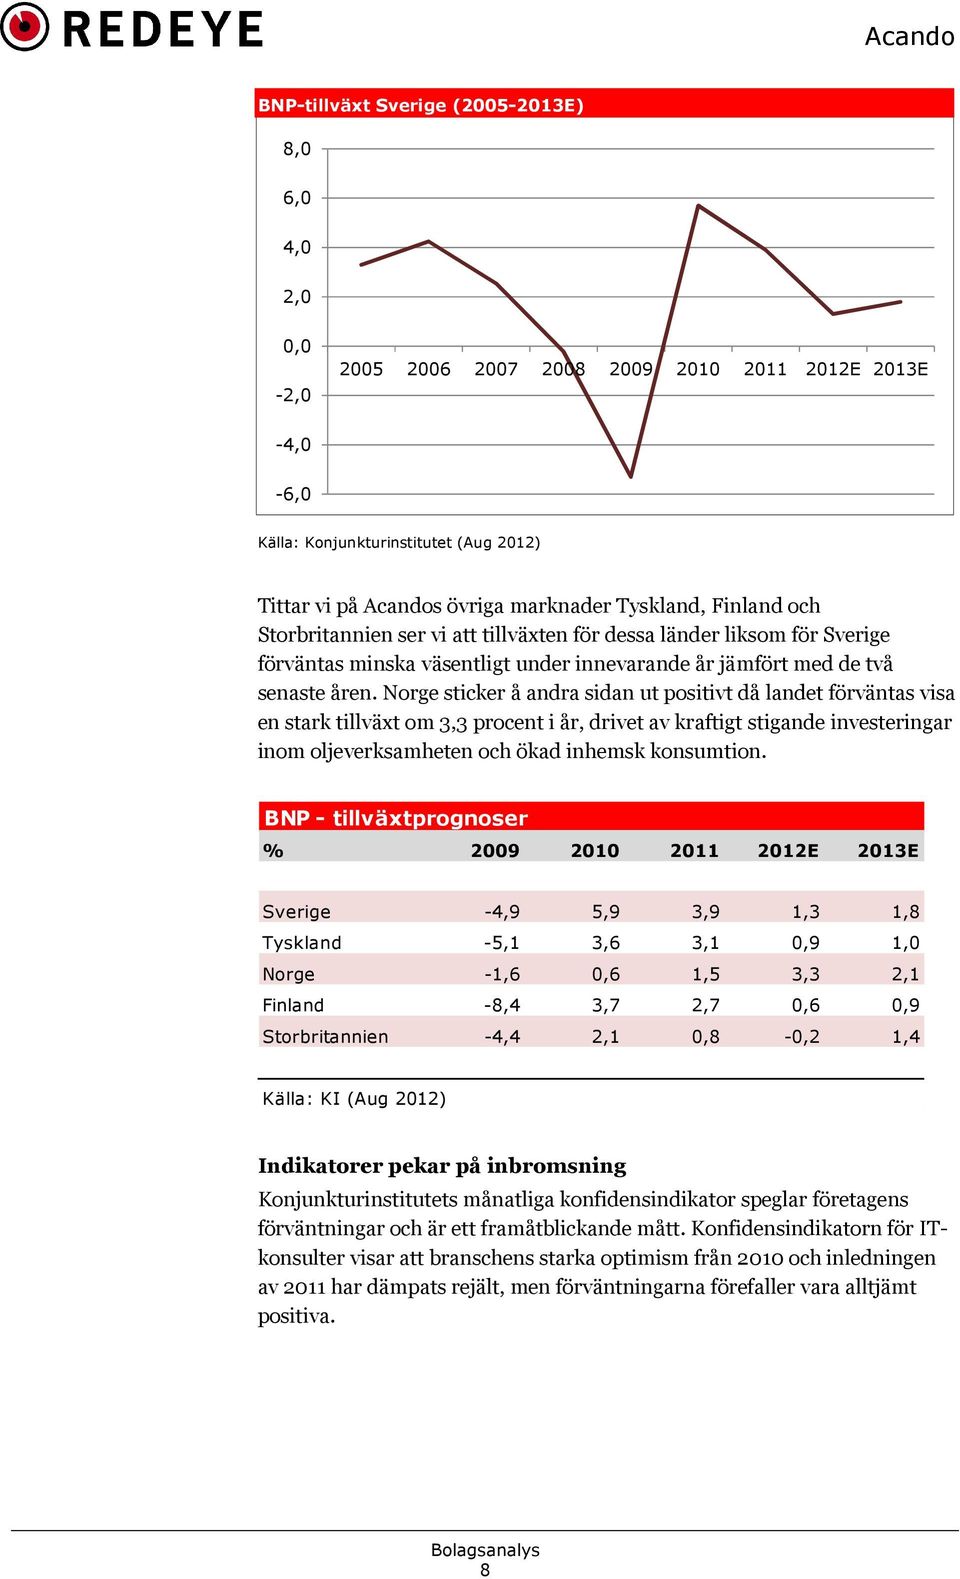 Norge sticker å andra sidan ut positivt då landet förväntas visa en stark tillväxt om 3,3 procent i år, drivet av kraftigt stigande investeringar inom oljeverksamheten och ökad inhemsk konsumtion.